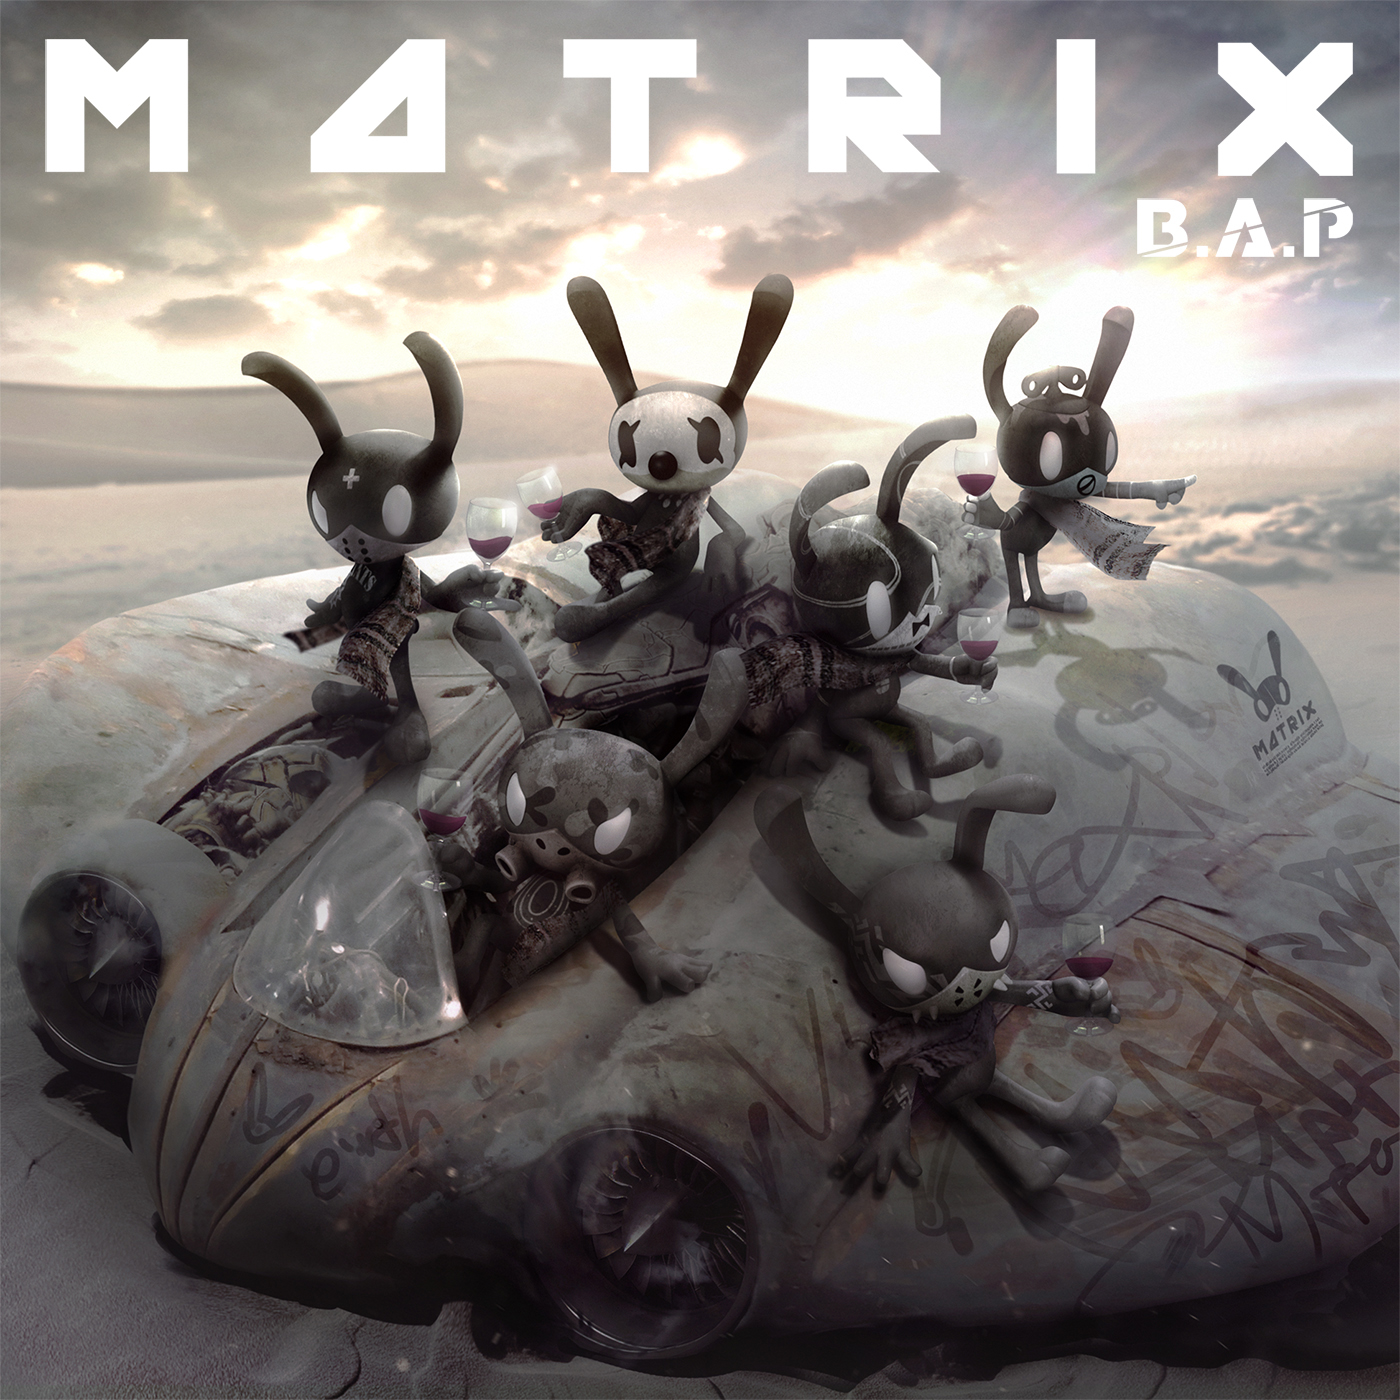 Poster + B.A.P - Mini Album Vol.4 [MATRIX] 